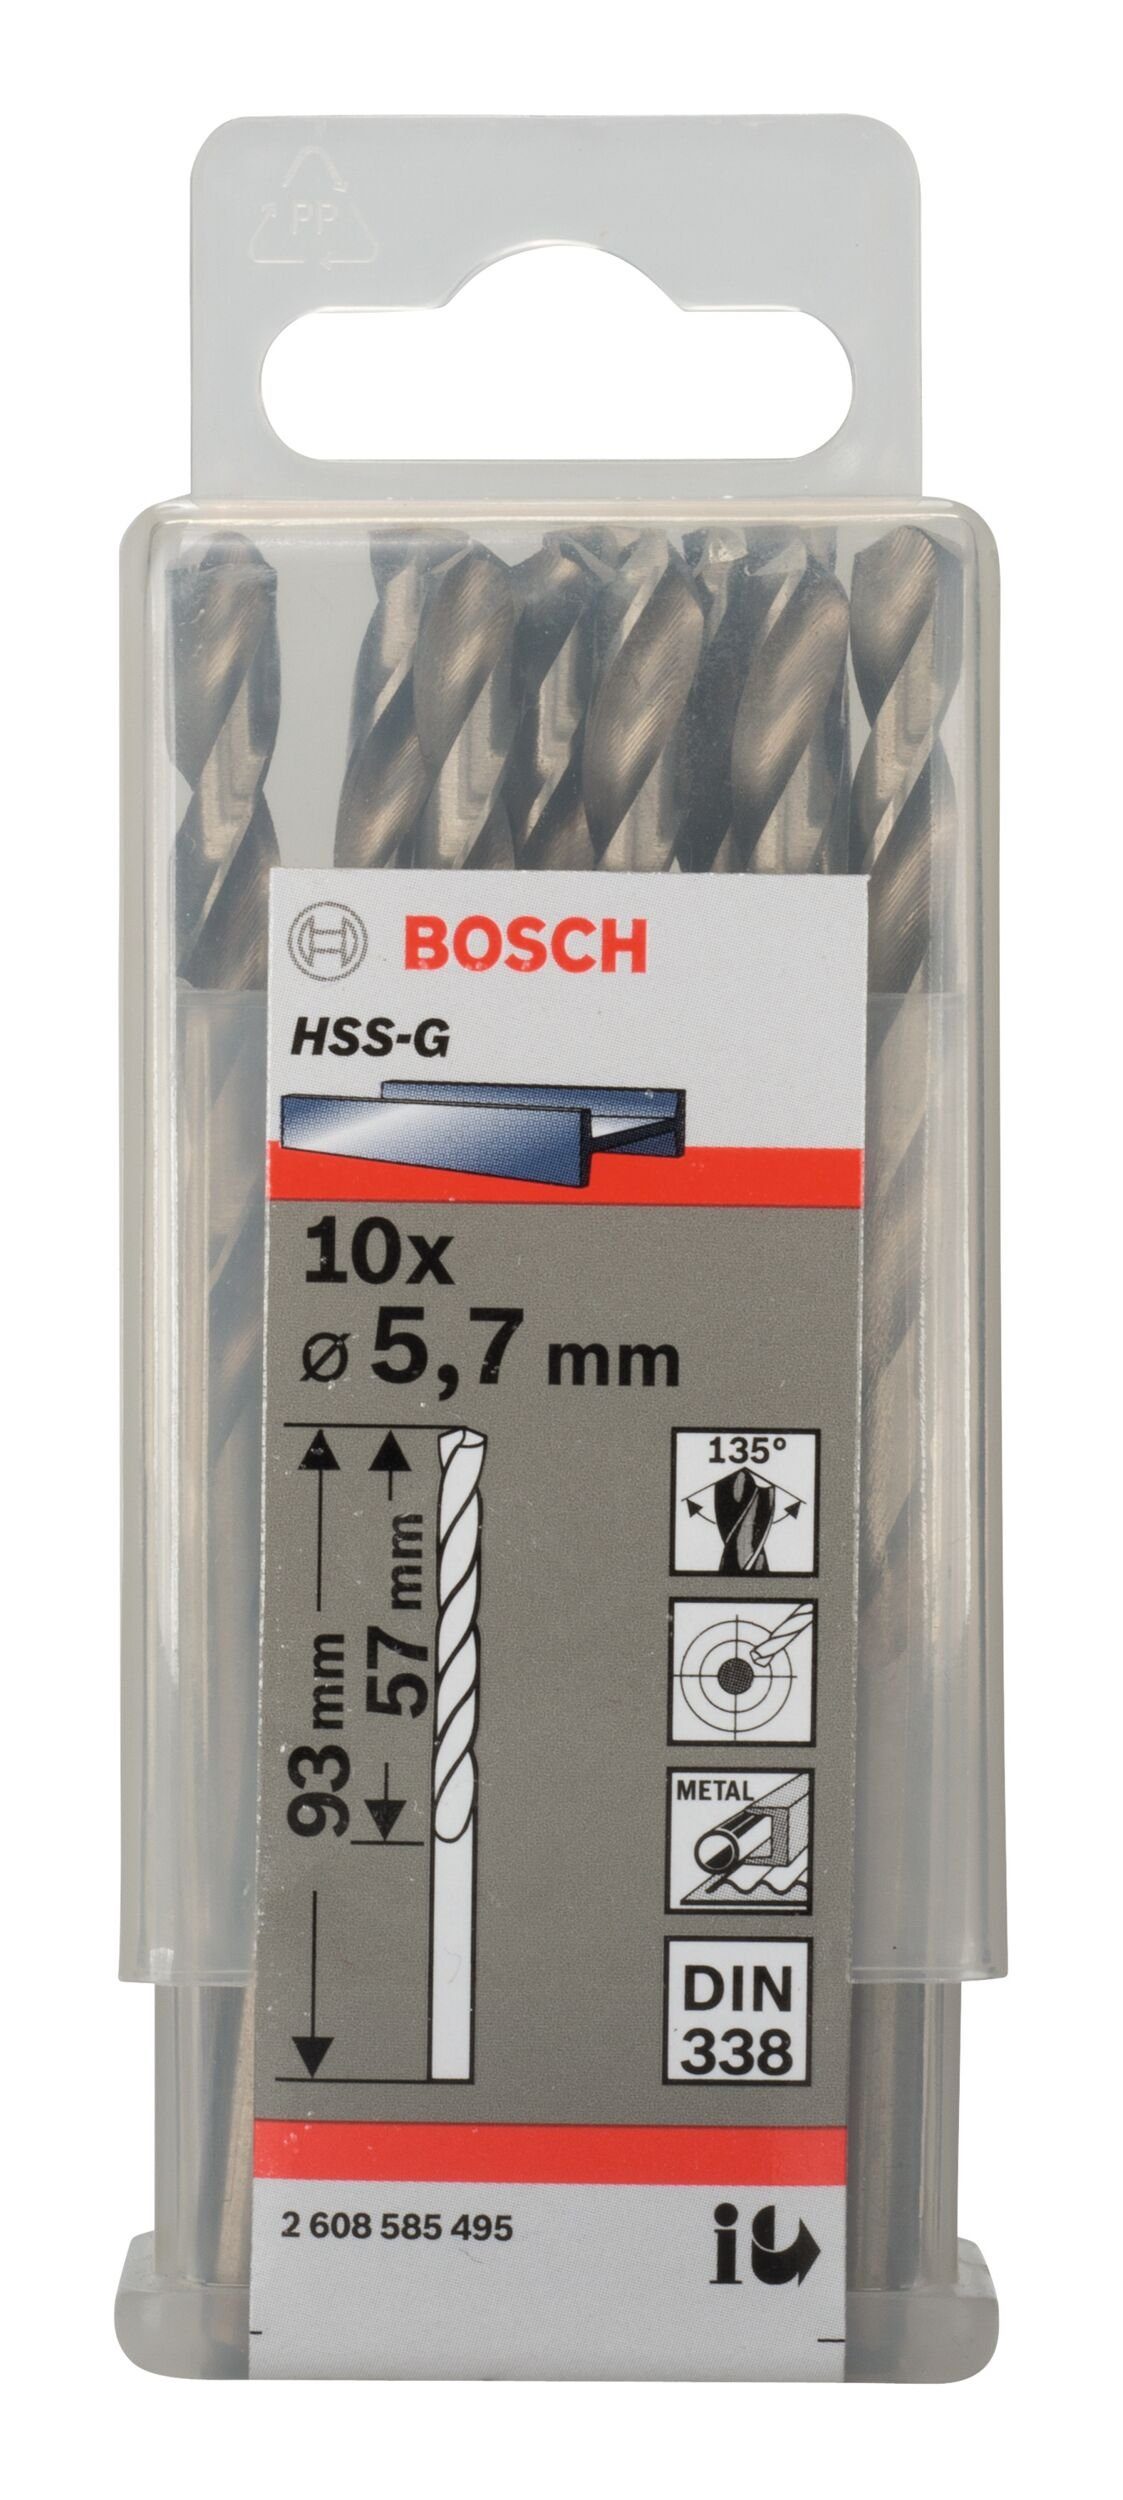 x - Stück), - 93 BOSCH 57 338) (10 (DIN 5,7 x mm HSS-G 10er-Pack Metallbohrer,